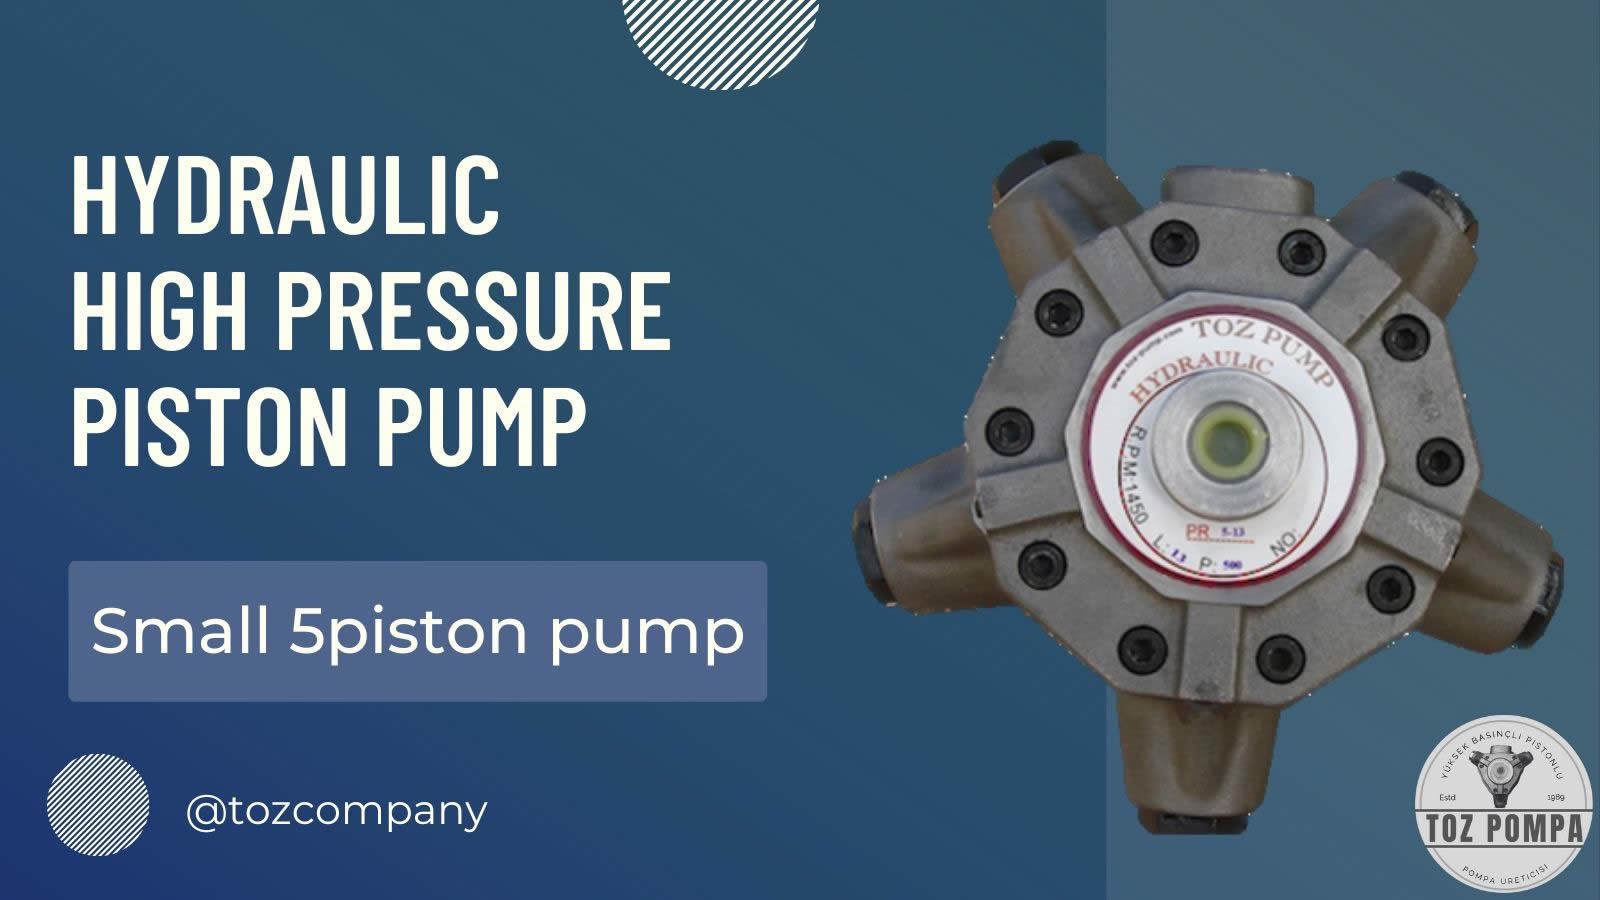 Small 5 piston pump